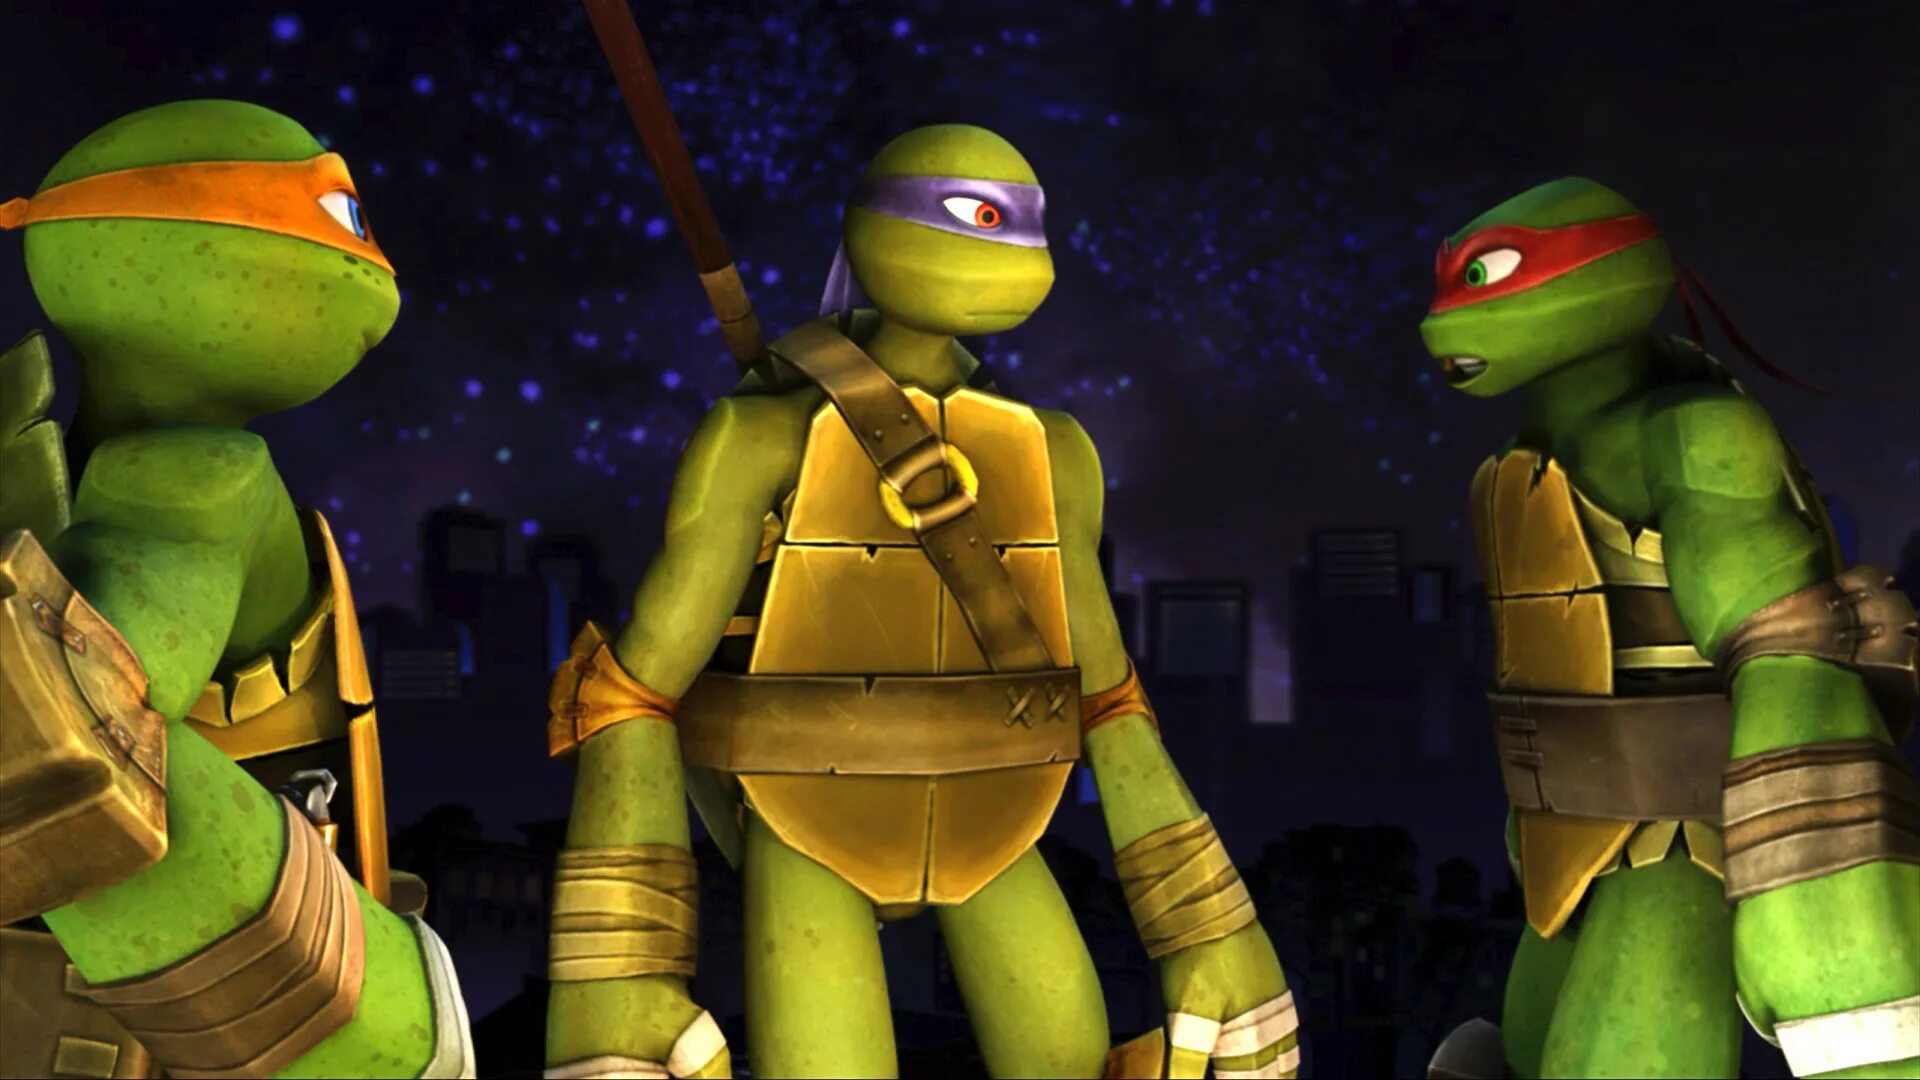 Turtles 2013. Teenage Mutant Ninja Turtles. Teenage Mutant Ninja Turtles 2012. Донателло Черепашки ниндзя 2013.